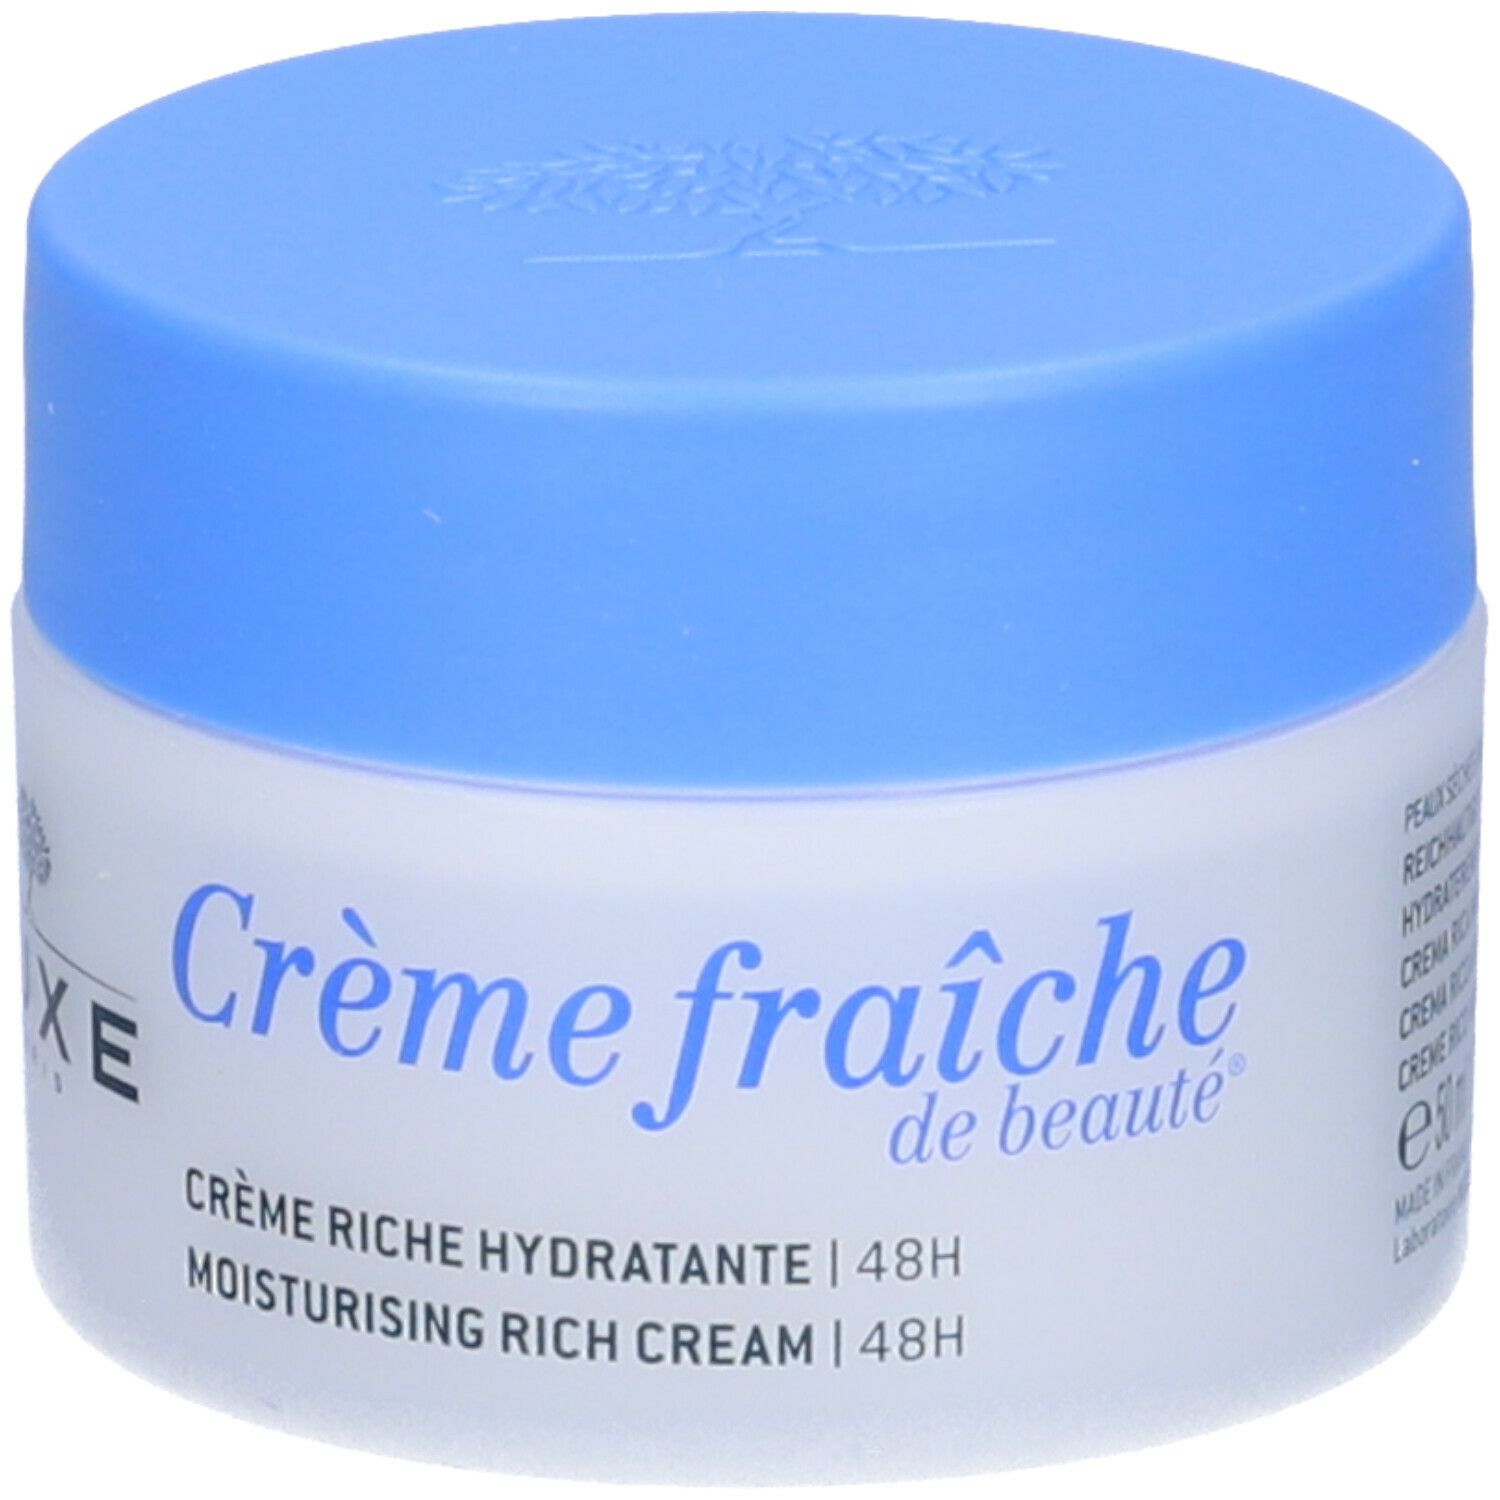 Image of NUXE Crème fraîche de beauté® Crema Ricca Idratante 48h Pelli Secche